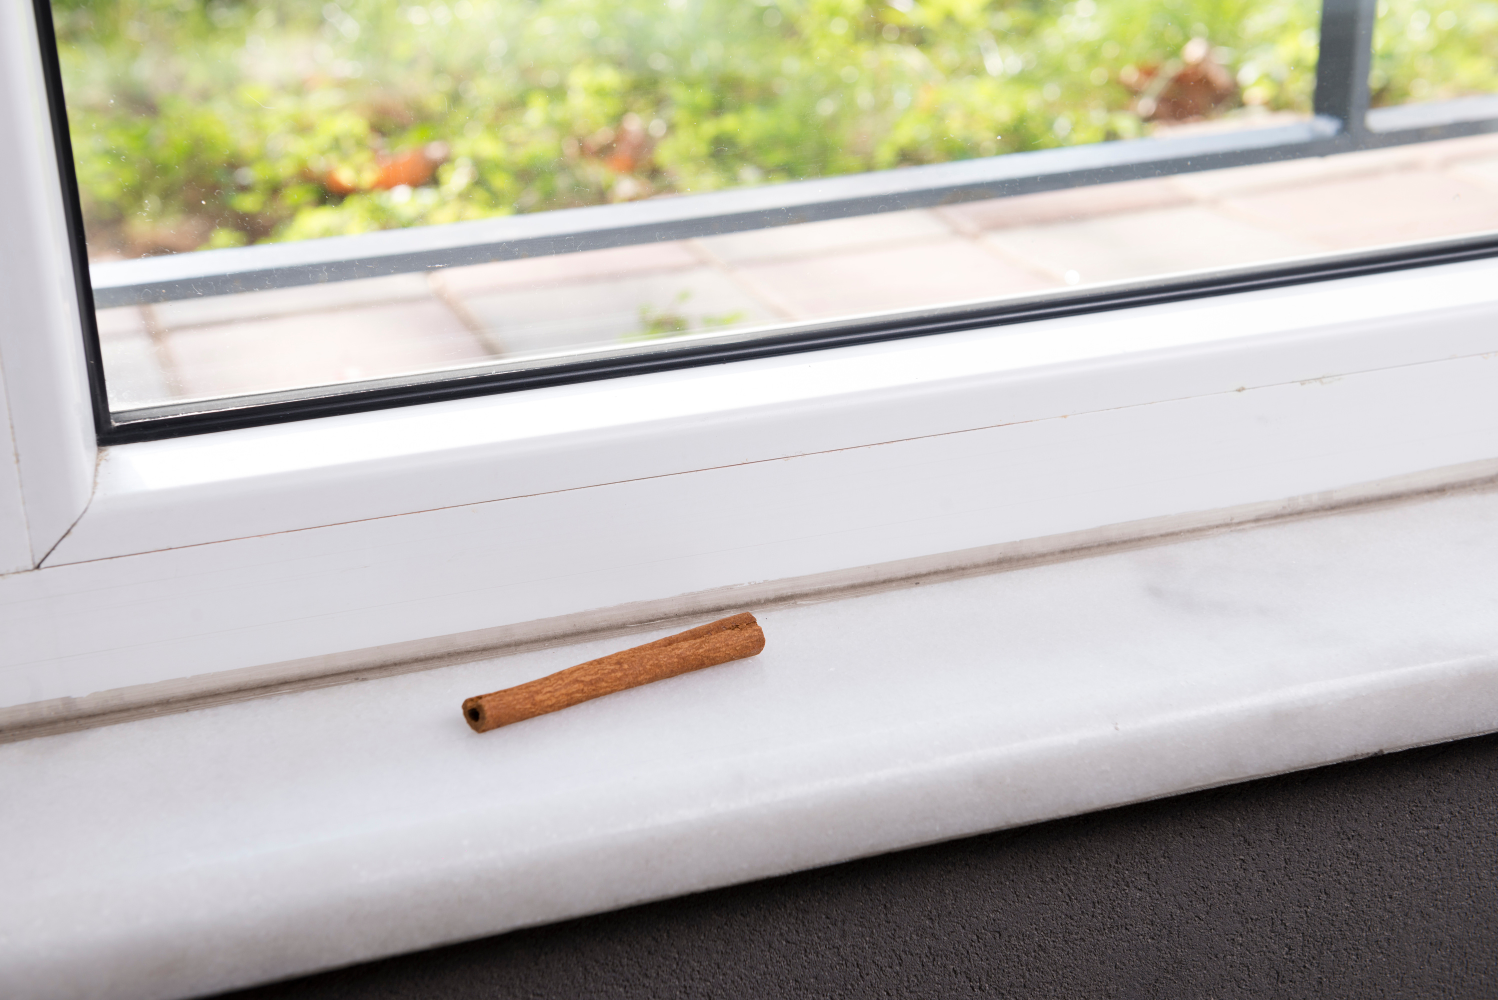 Eine Zimtstange auf dem Fensterbrett. Zimt ist ein effektives Hausmittel gegen Ameisen.